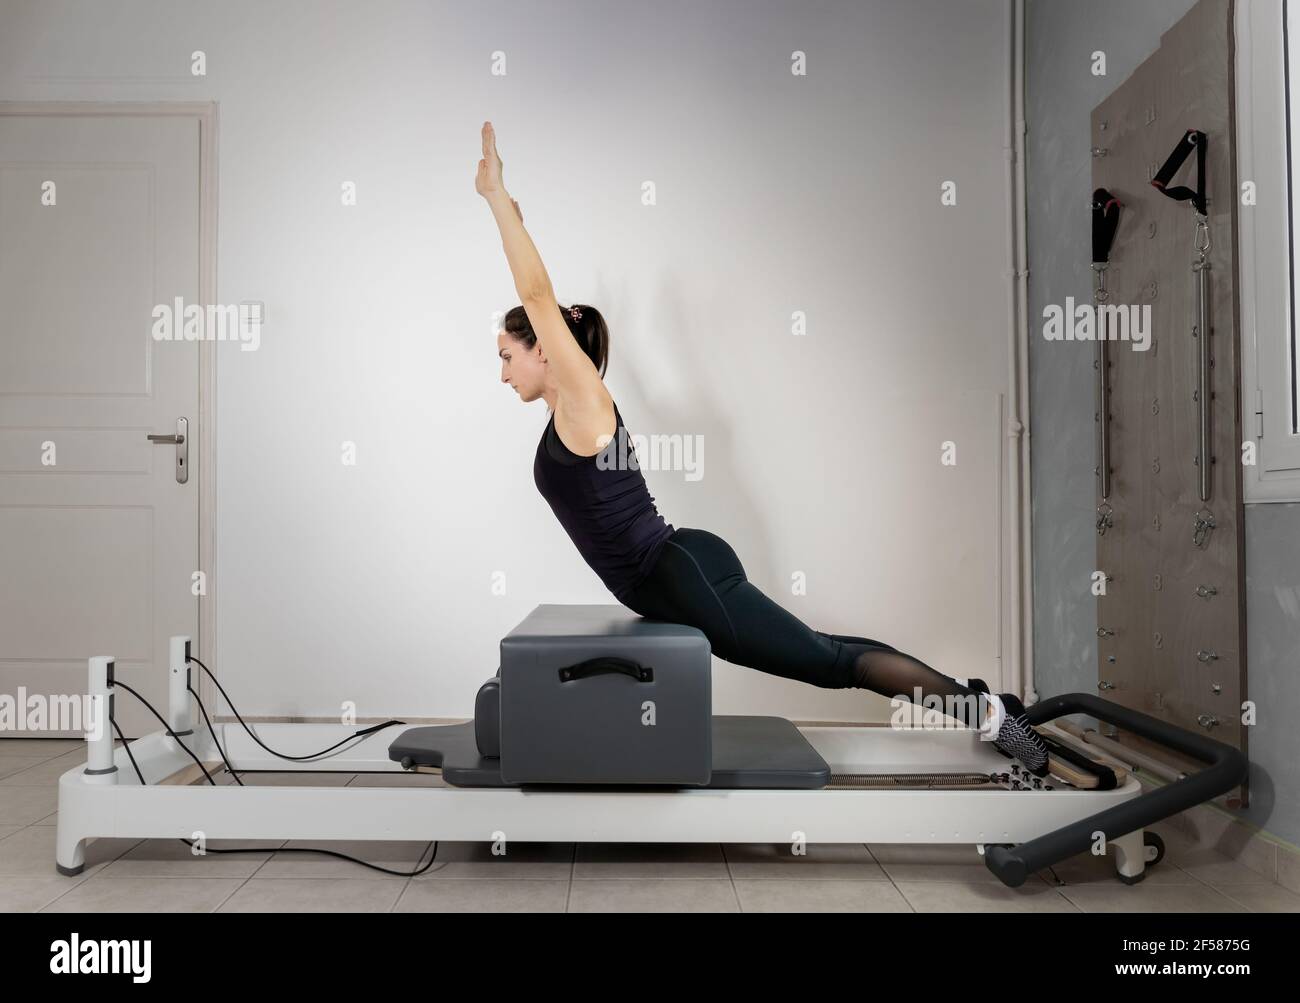 Une femme faisant des exercices de pilates sur un lit réformé. Banque D'Images